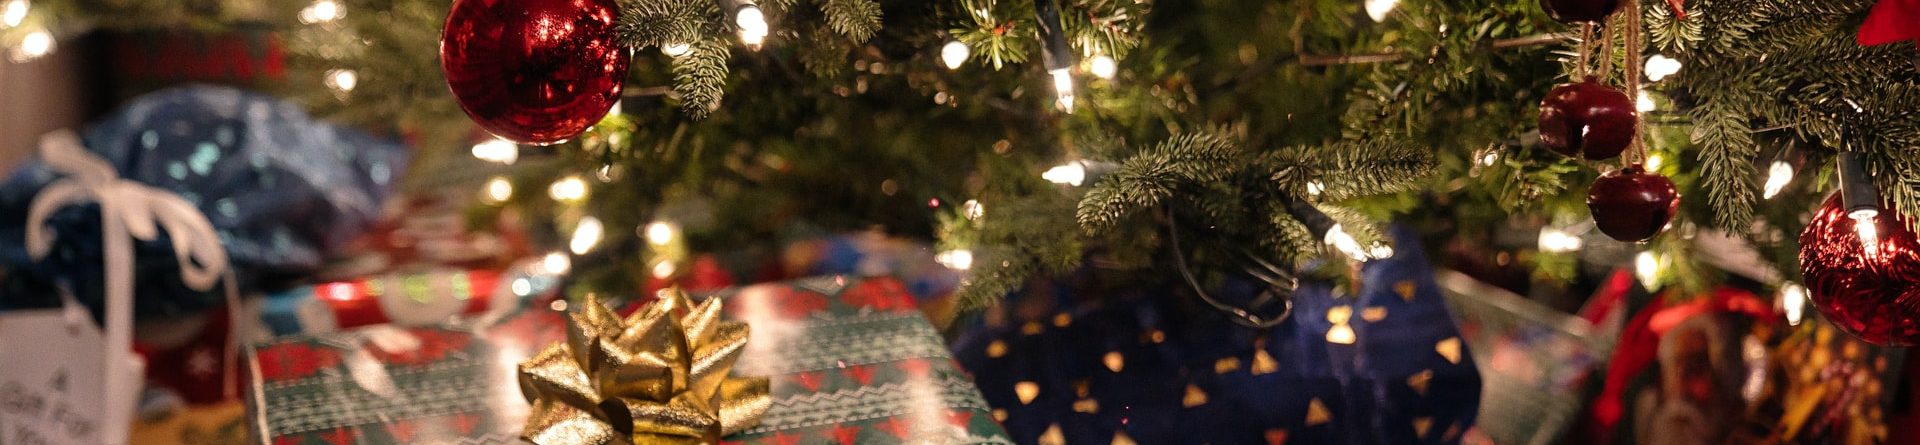 25 идей новогодних подарков из Ирландии